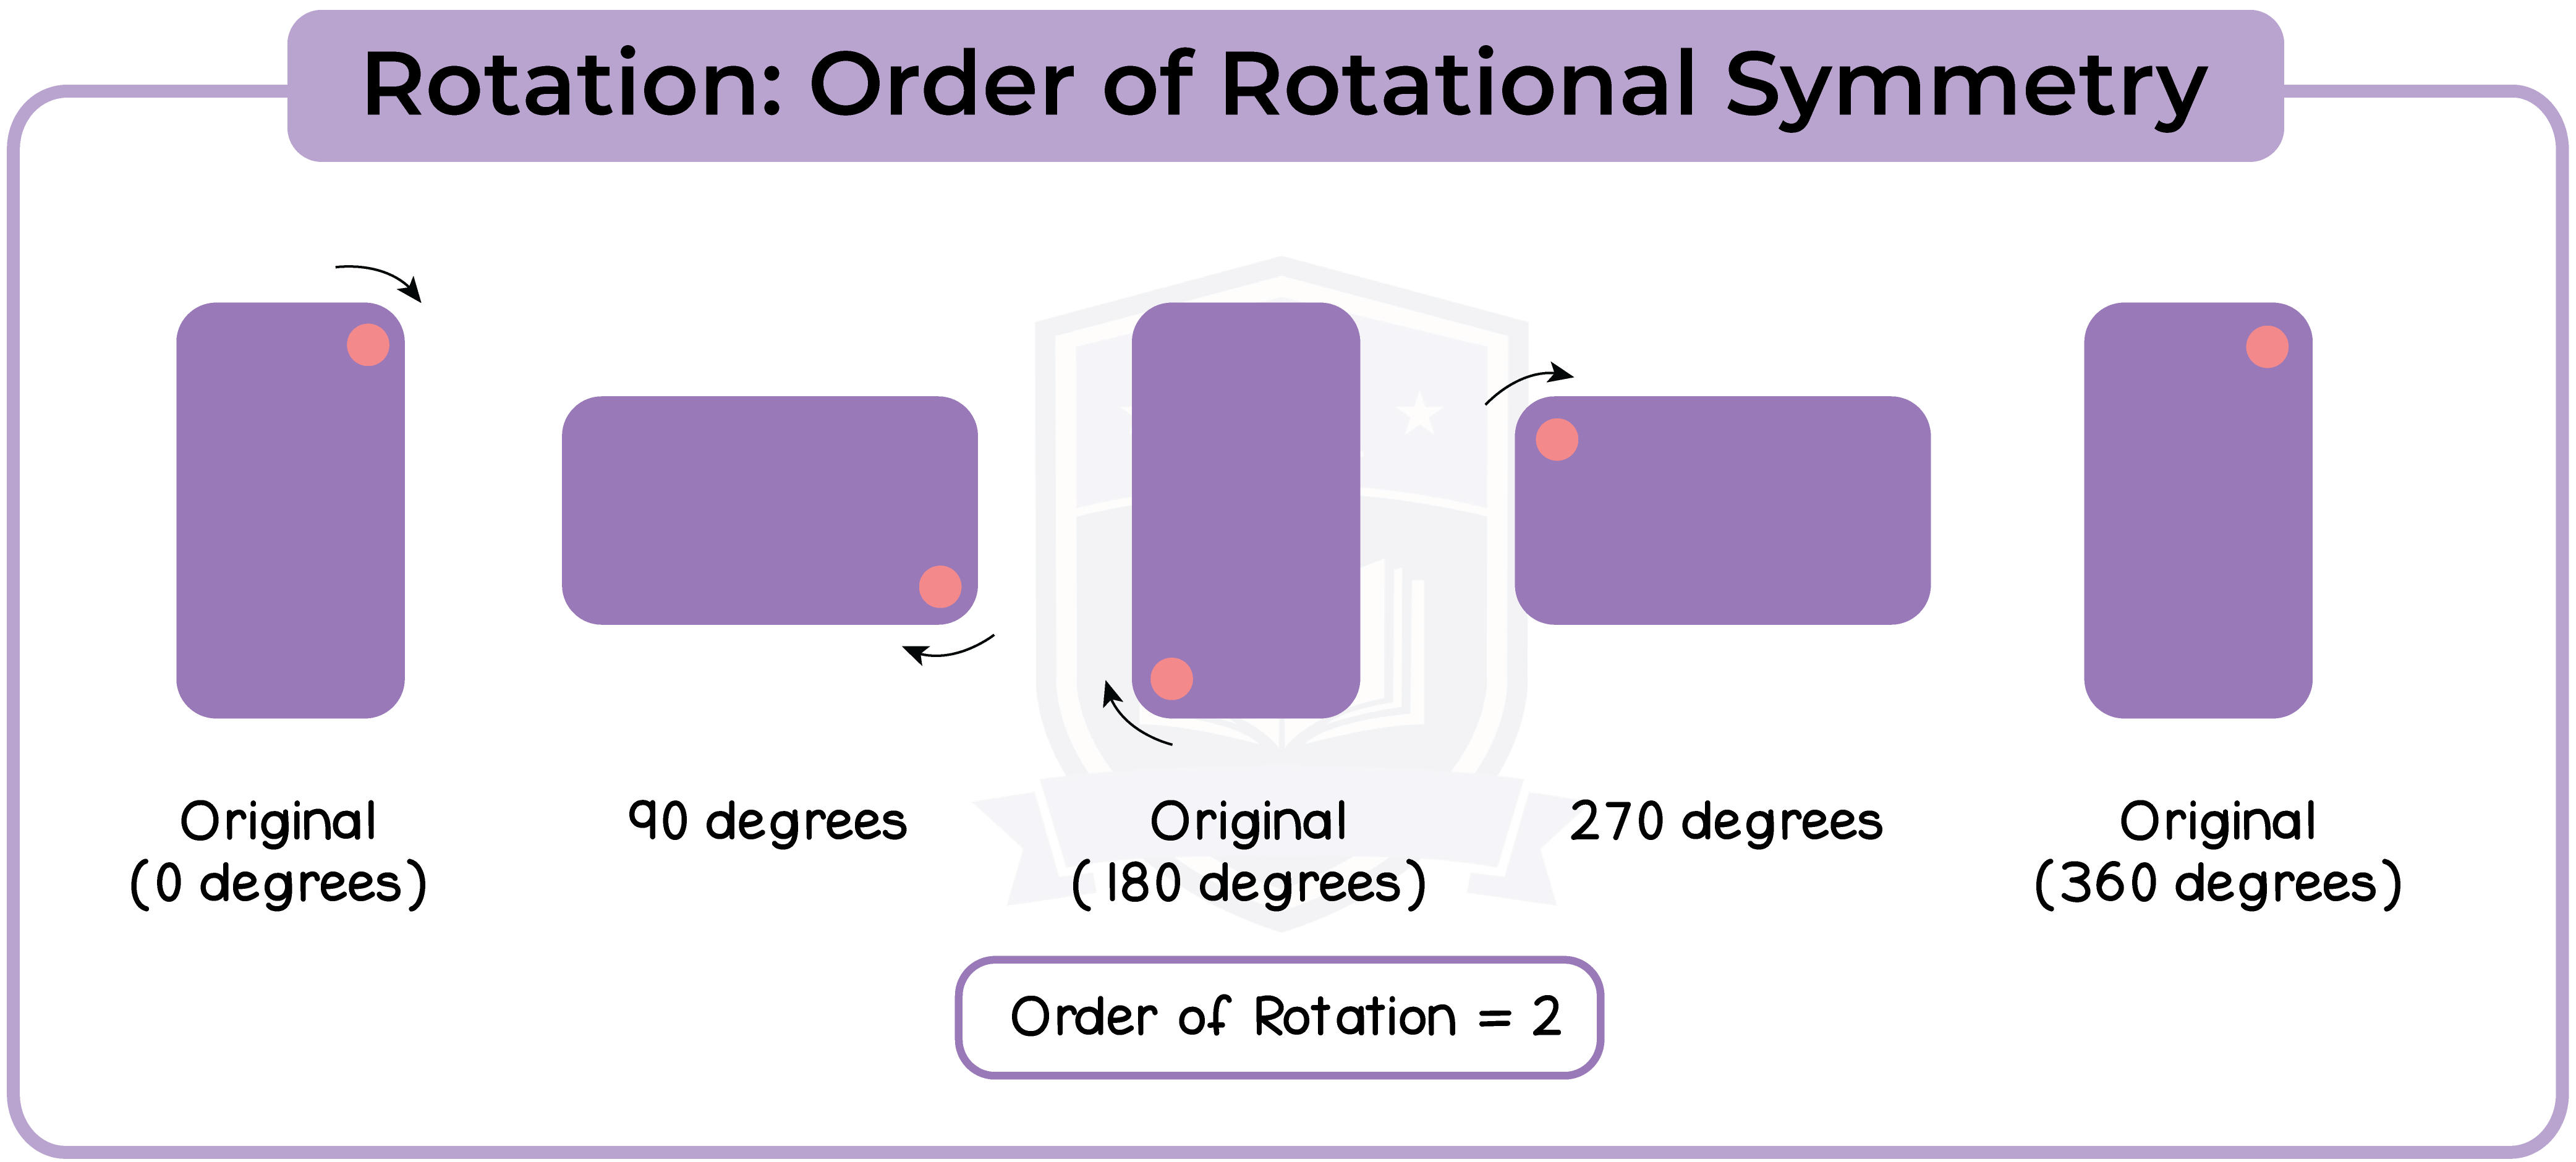 edexcel_igcse_mathematics a_topic 27_symmetry_002_Rotation: Order of Rotational Symmetry